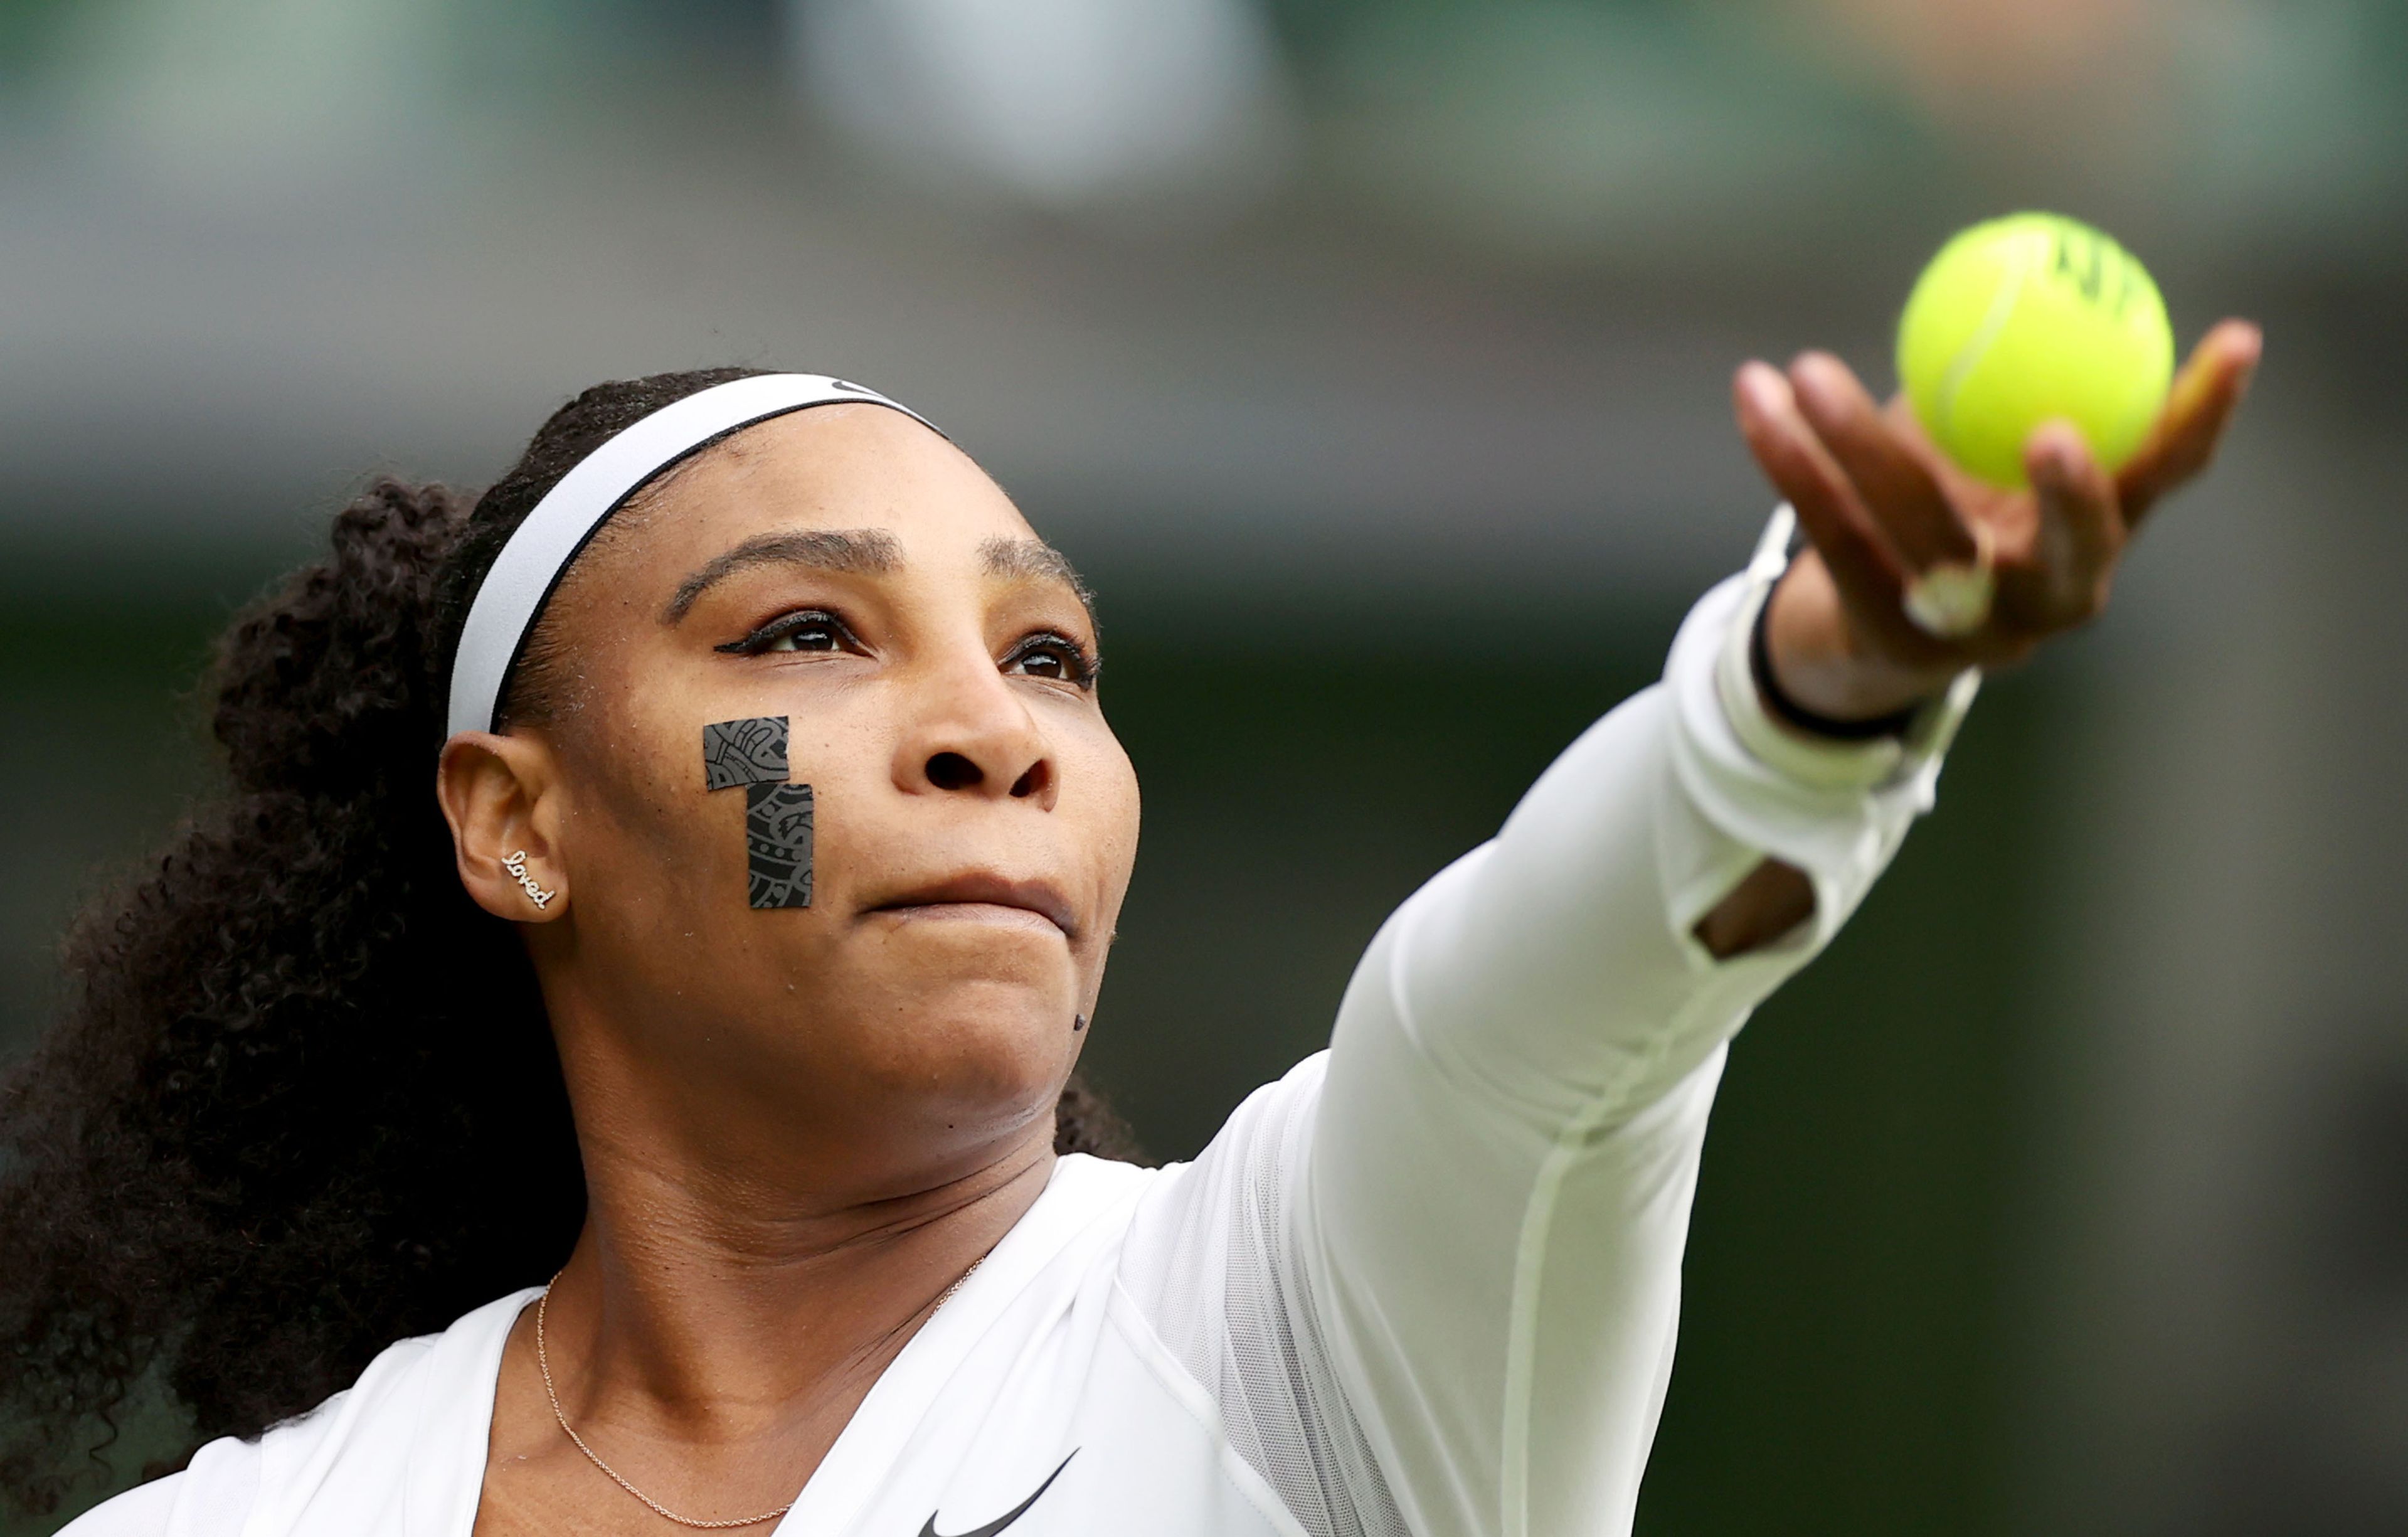 Végleg visszavonul Serena Williams az élsporttól / Fotó: Northfoto